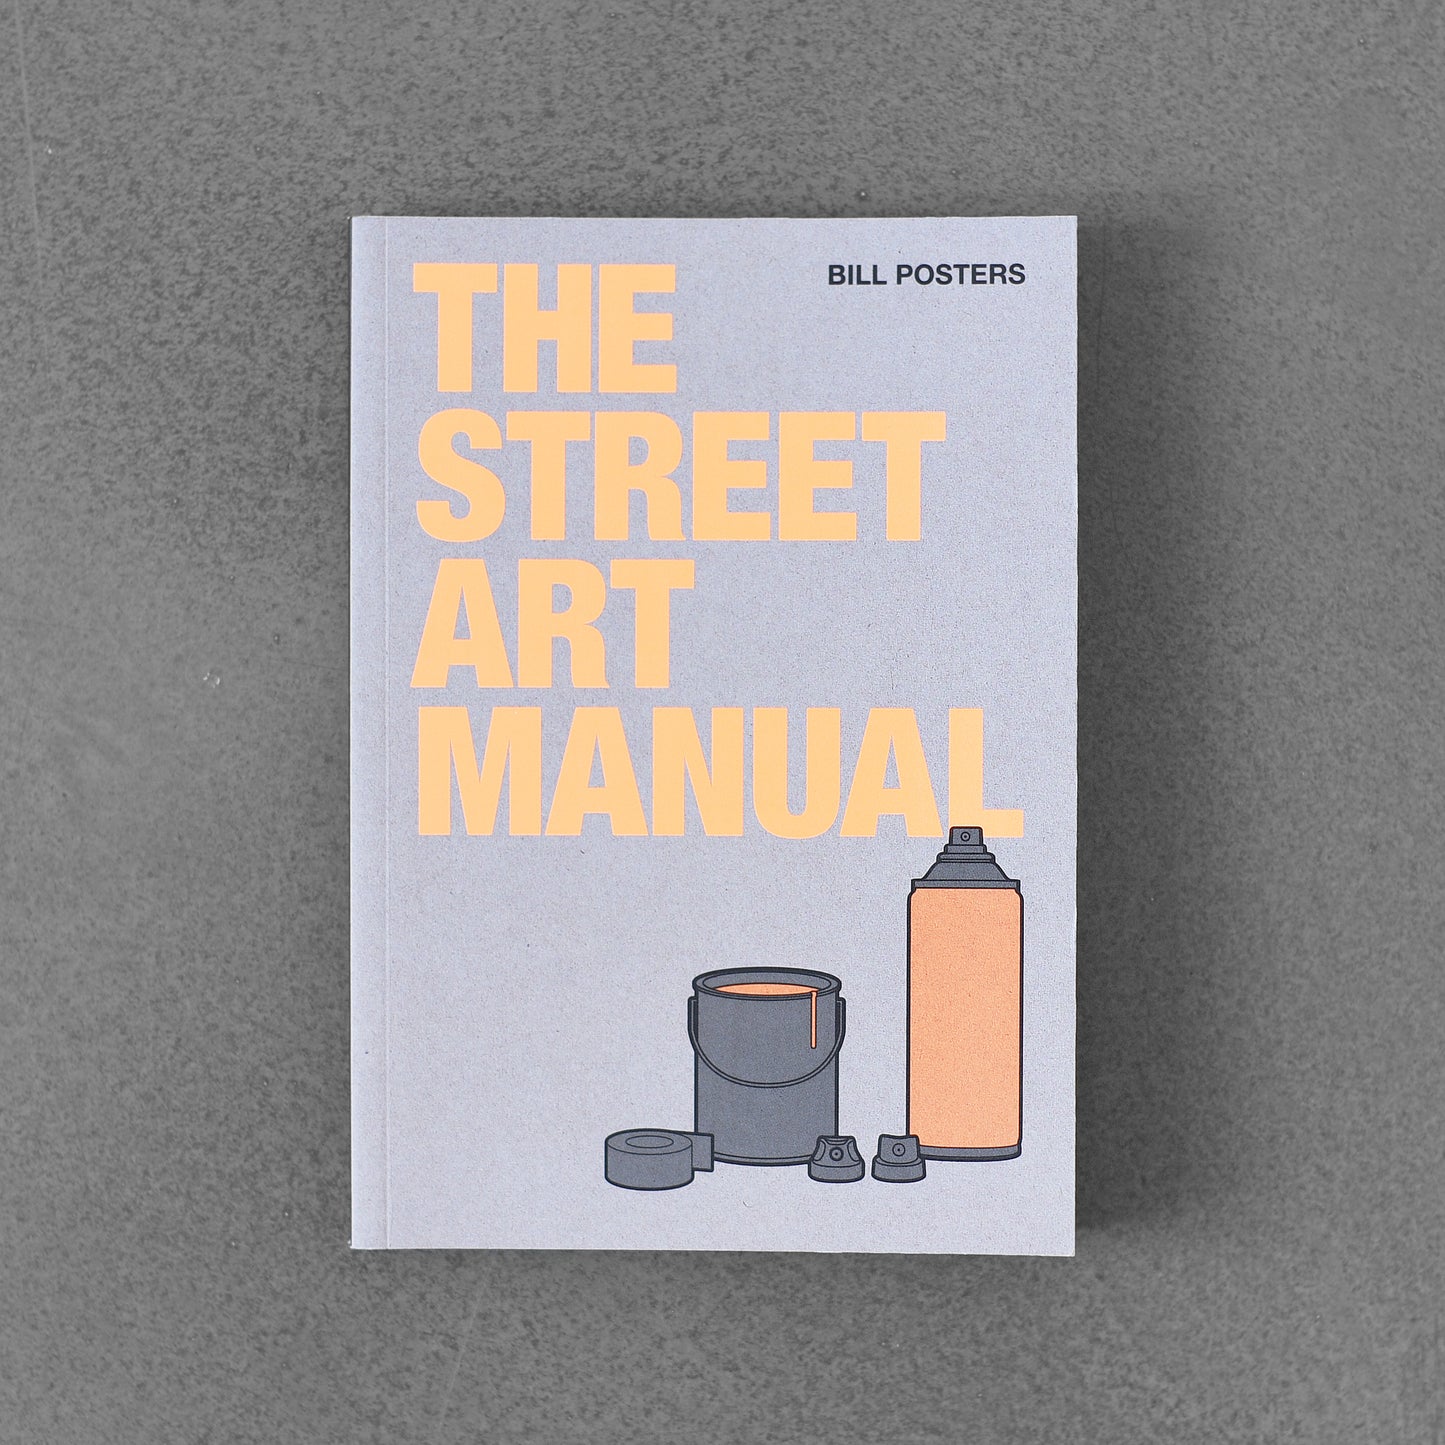 The Street Art Manual - Bill Posters